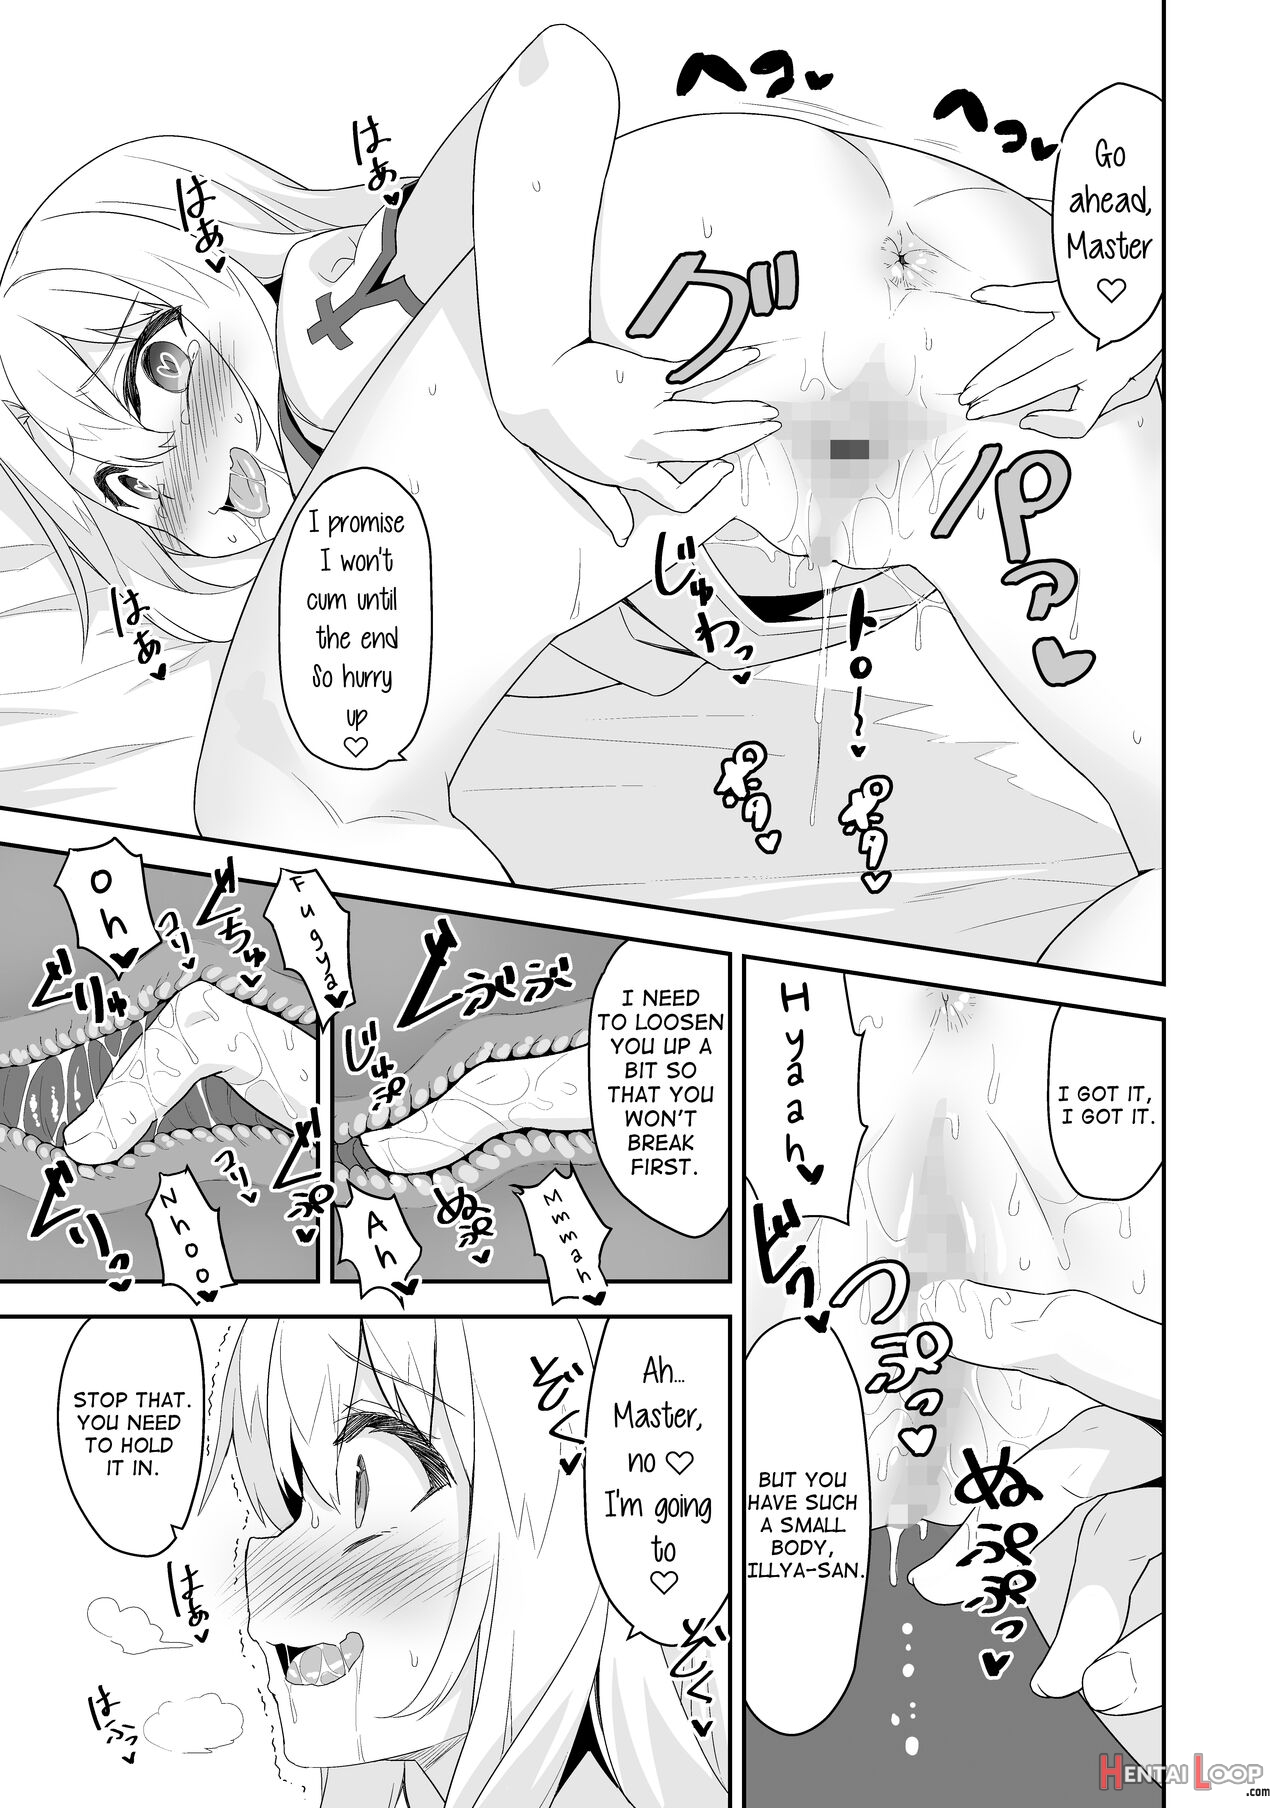 Illya-san No Dochudochu Kyouka Quest page 9